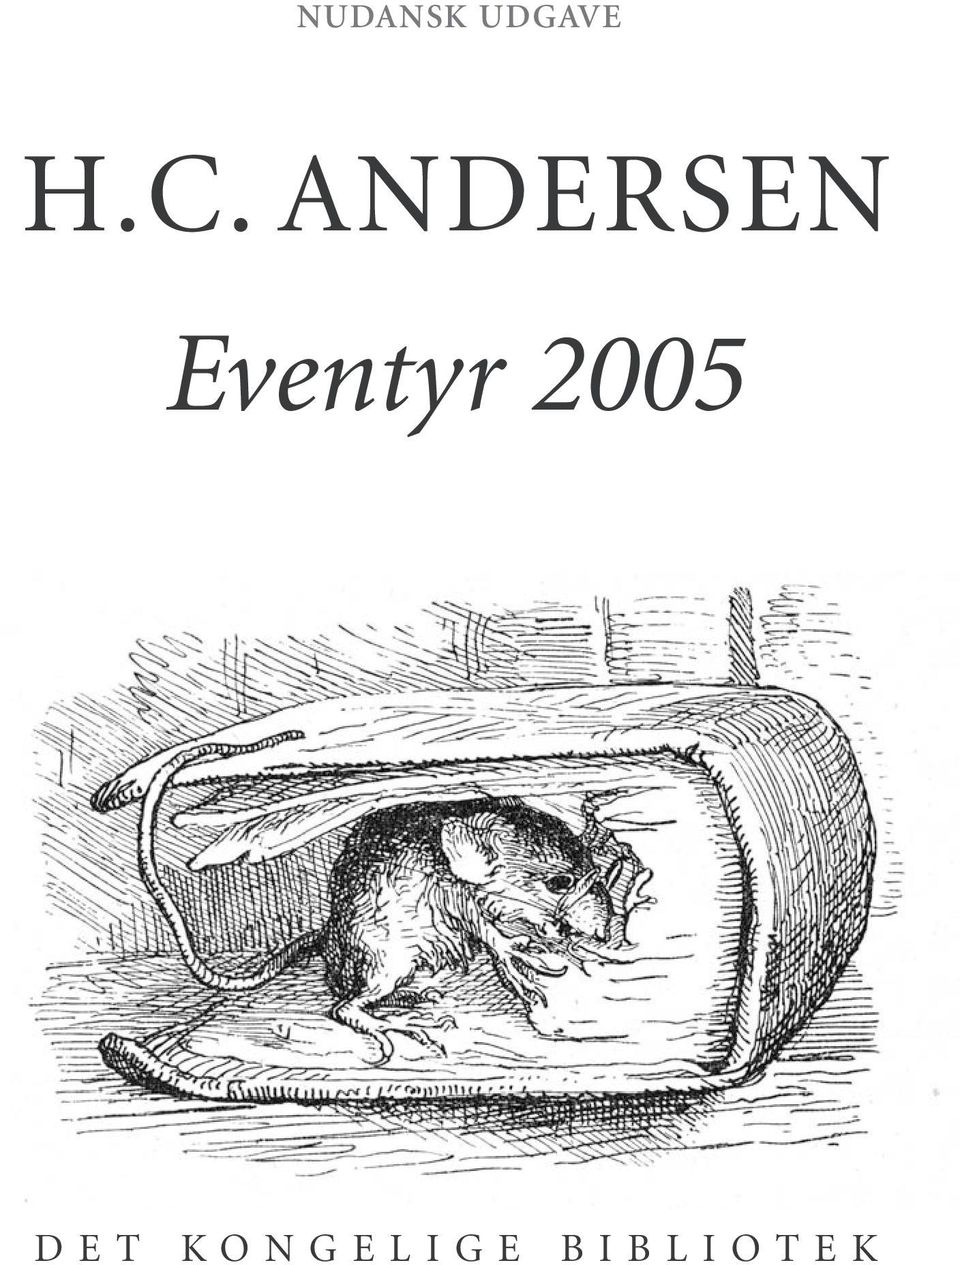 skal Efternavn dæk Eventyr H.C. ANDERSEN 2005 NUDANSK UDGAVE - PDF Free Download